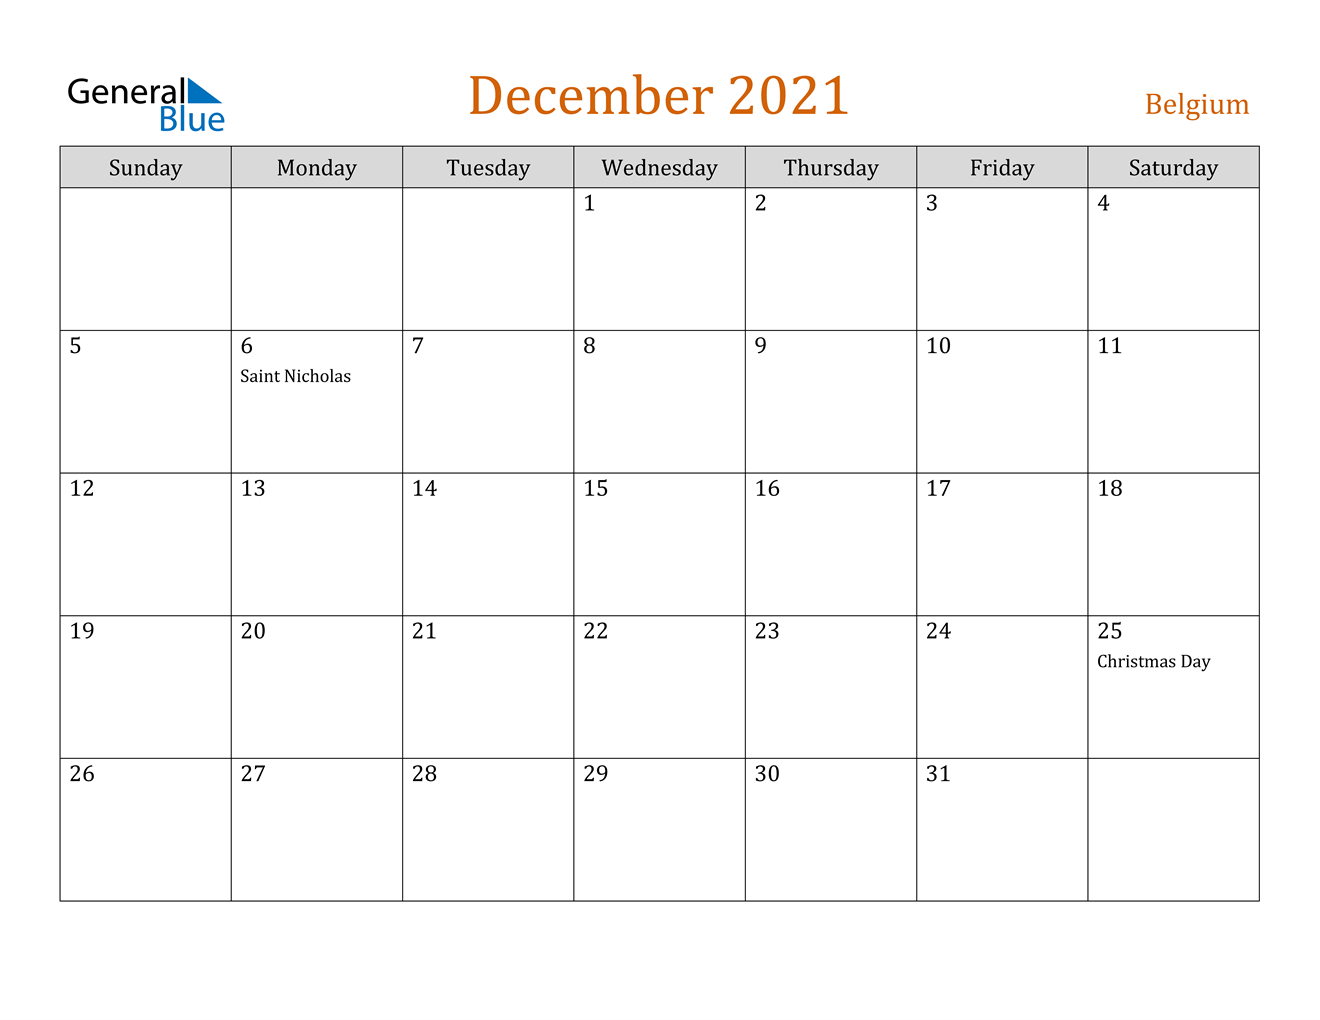 December 2021 Calendar - Belgium